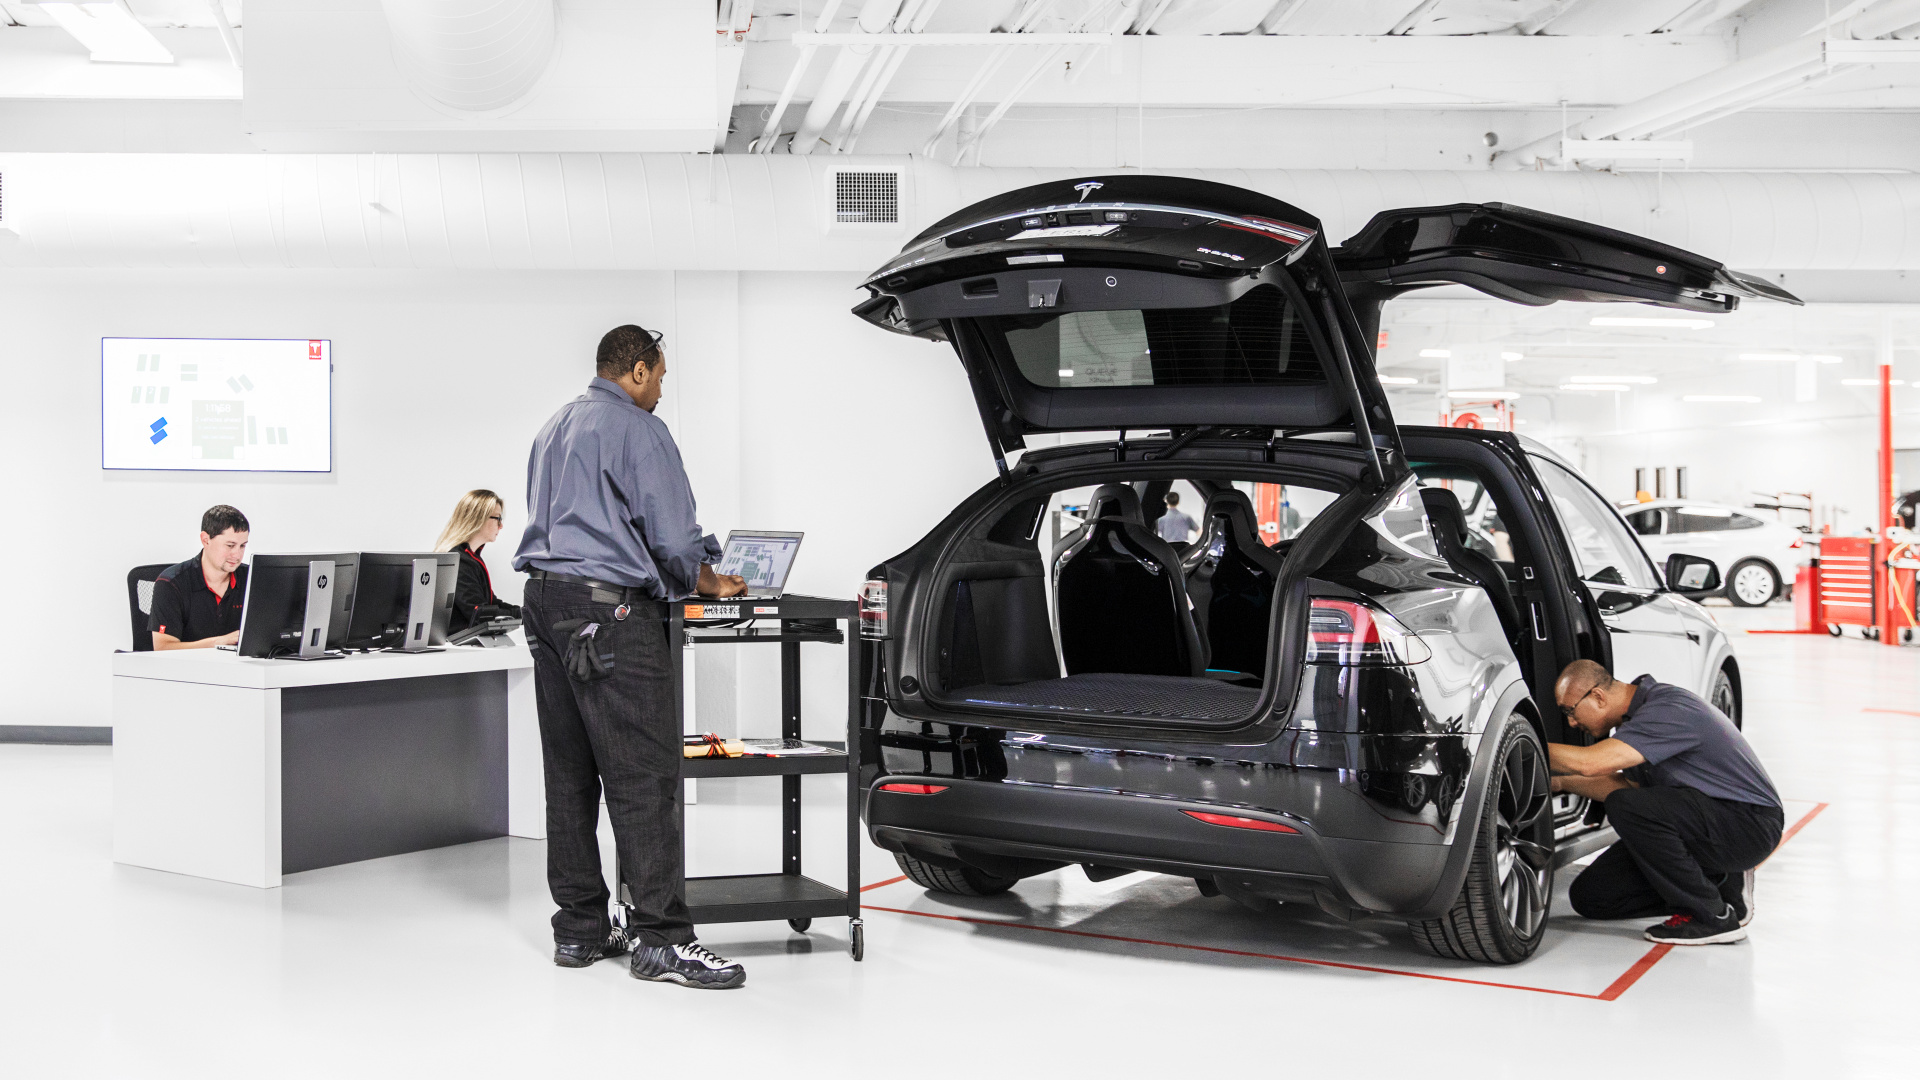 SMALL_Tesla 專業的服務顧問與技師團隊將提供車主同步全球的車輛軟硬體診斷、維修保養與原廠配件選購等服務。